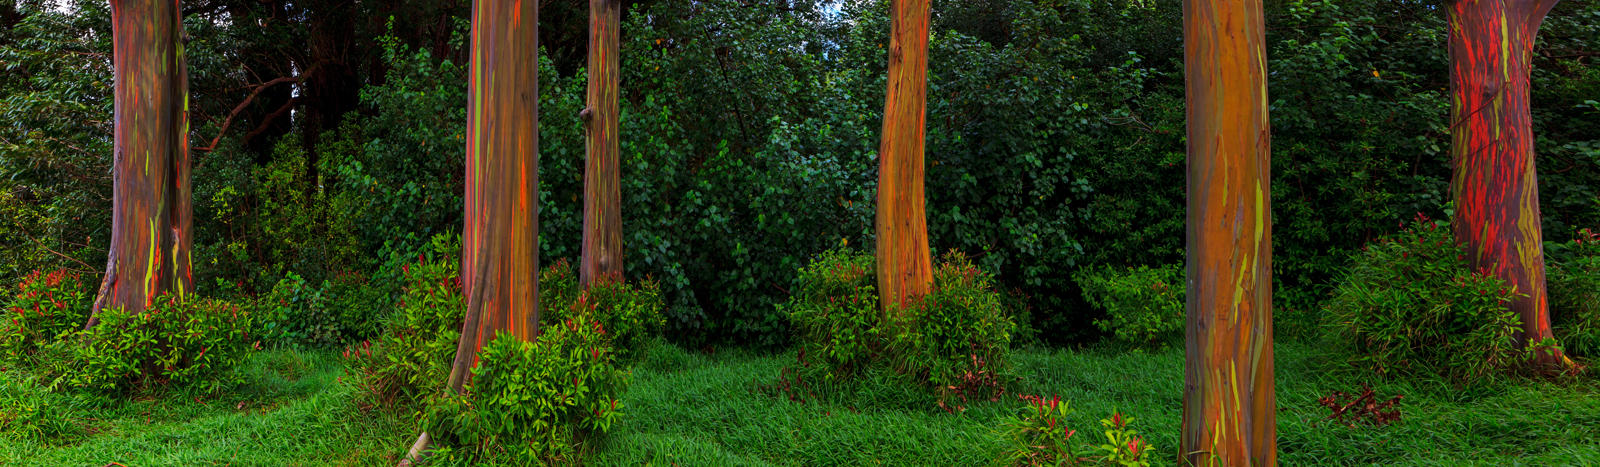 HIDDEN FOREST
         -- © Copyright 2022 Jaz Fabry Fine Art --